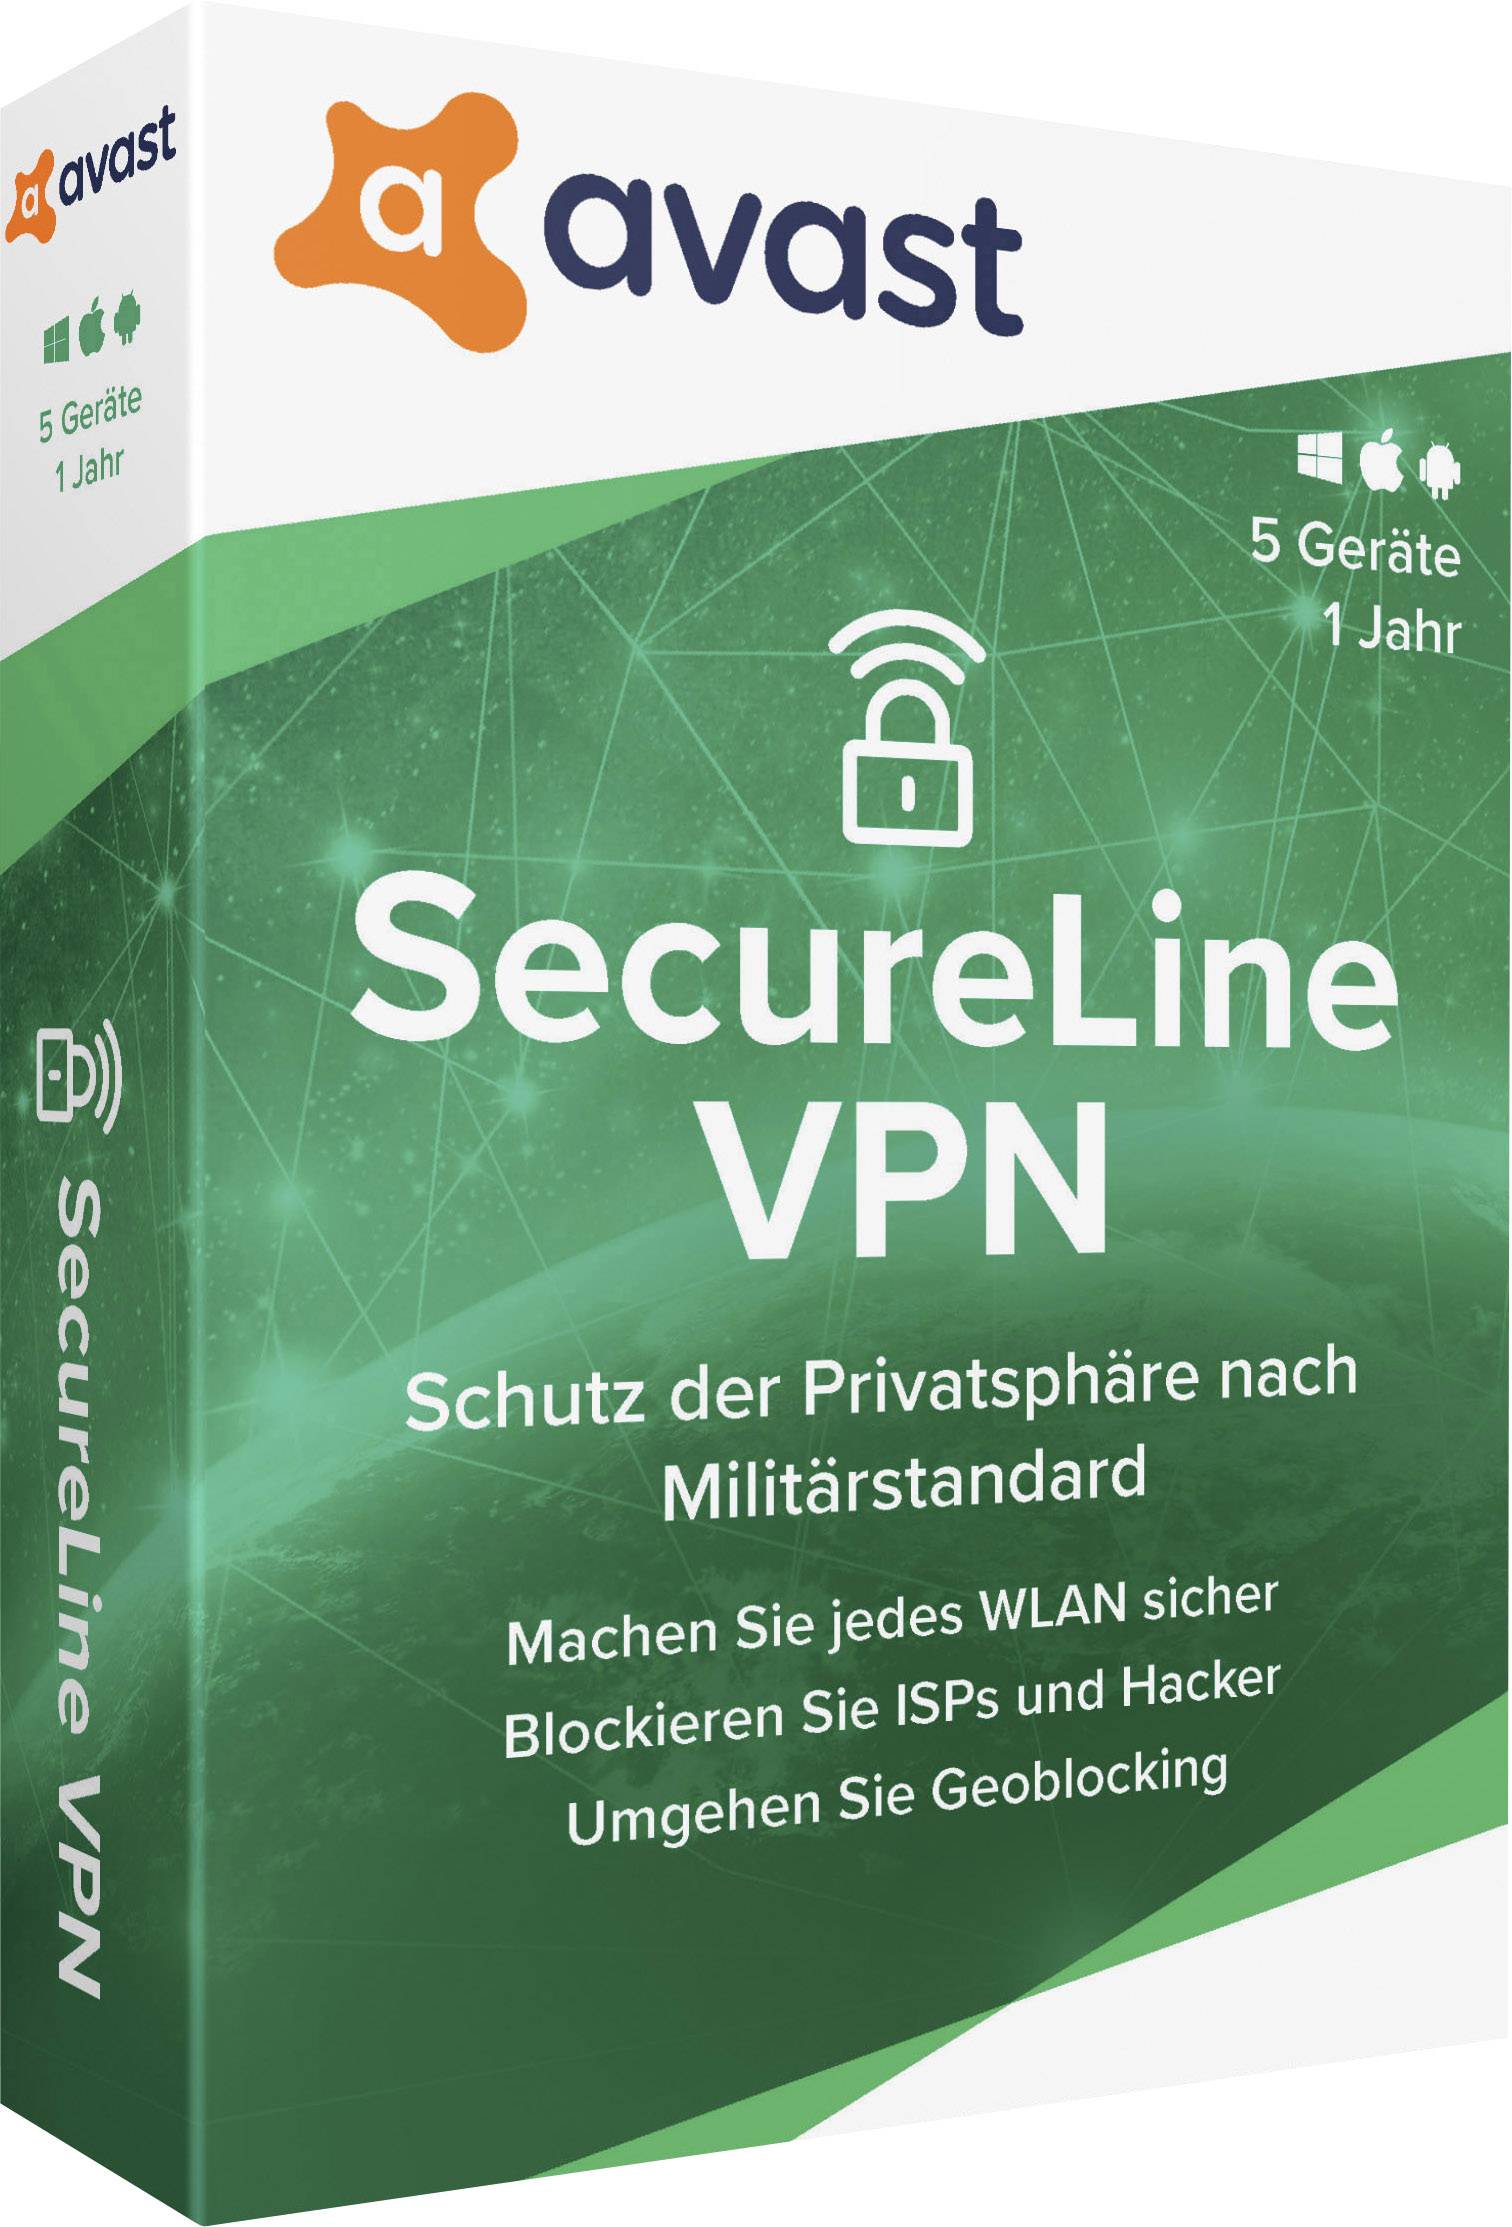 license avast secure line vpn torrent